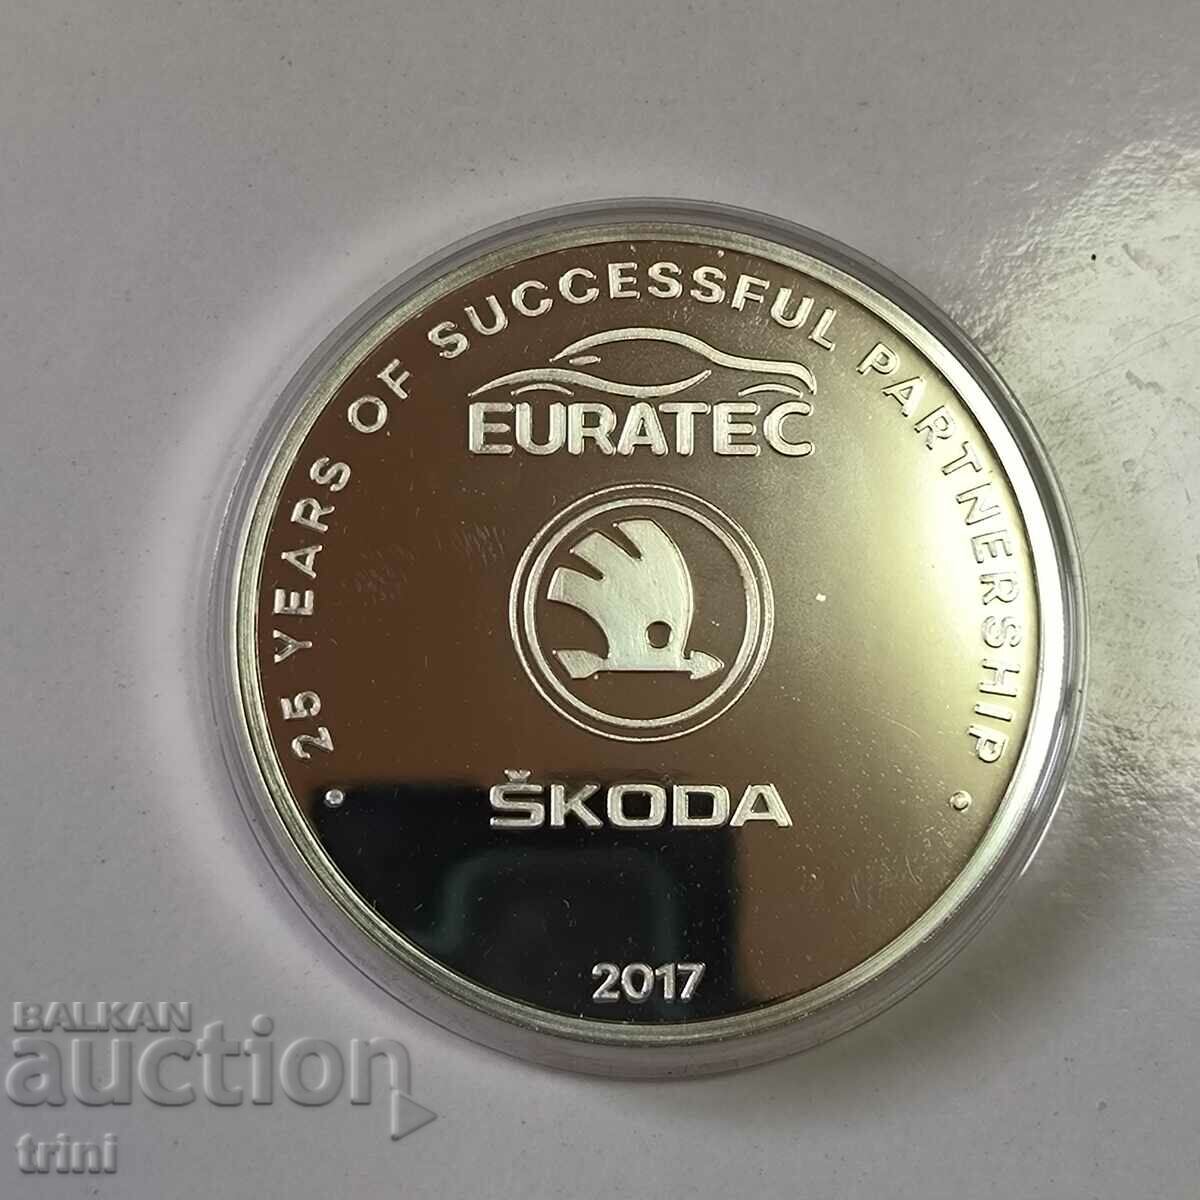 Επάργυρη πλάκα 25 ετών Euratek - ŠKODA limited series